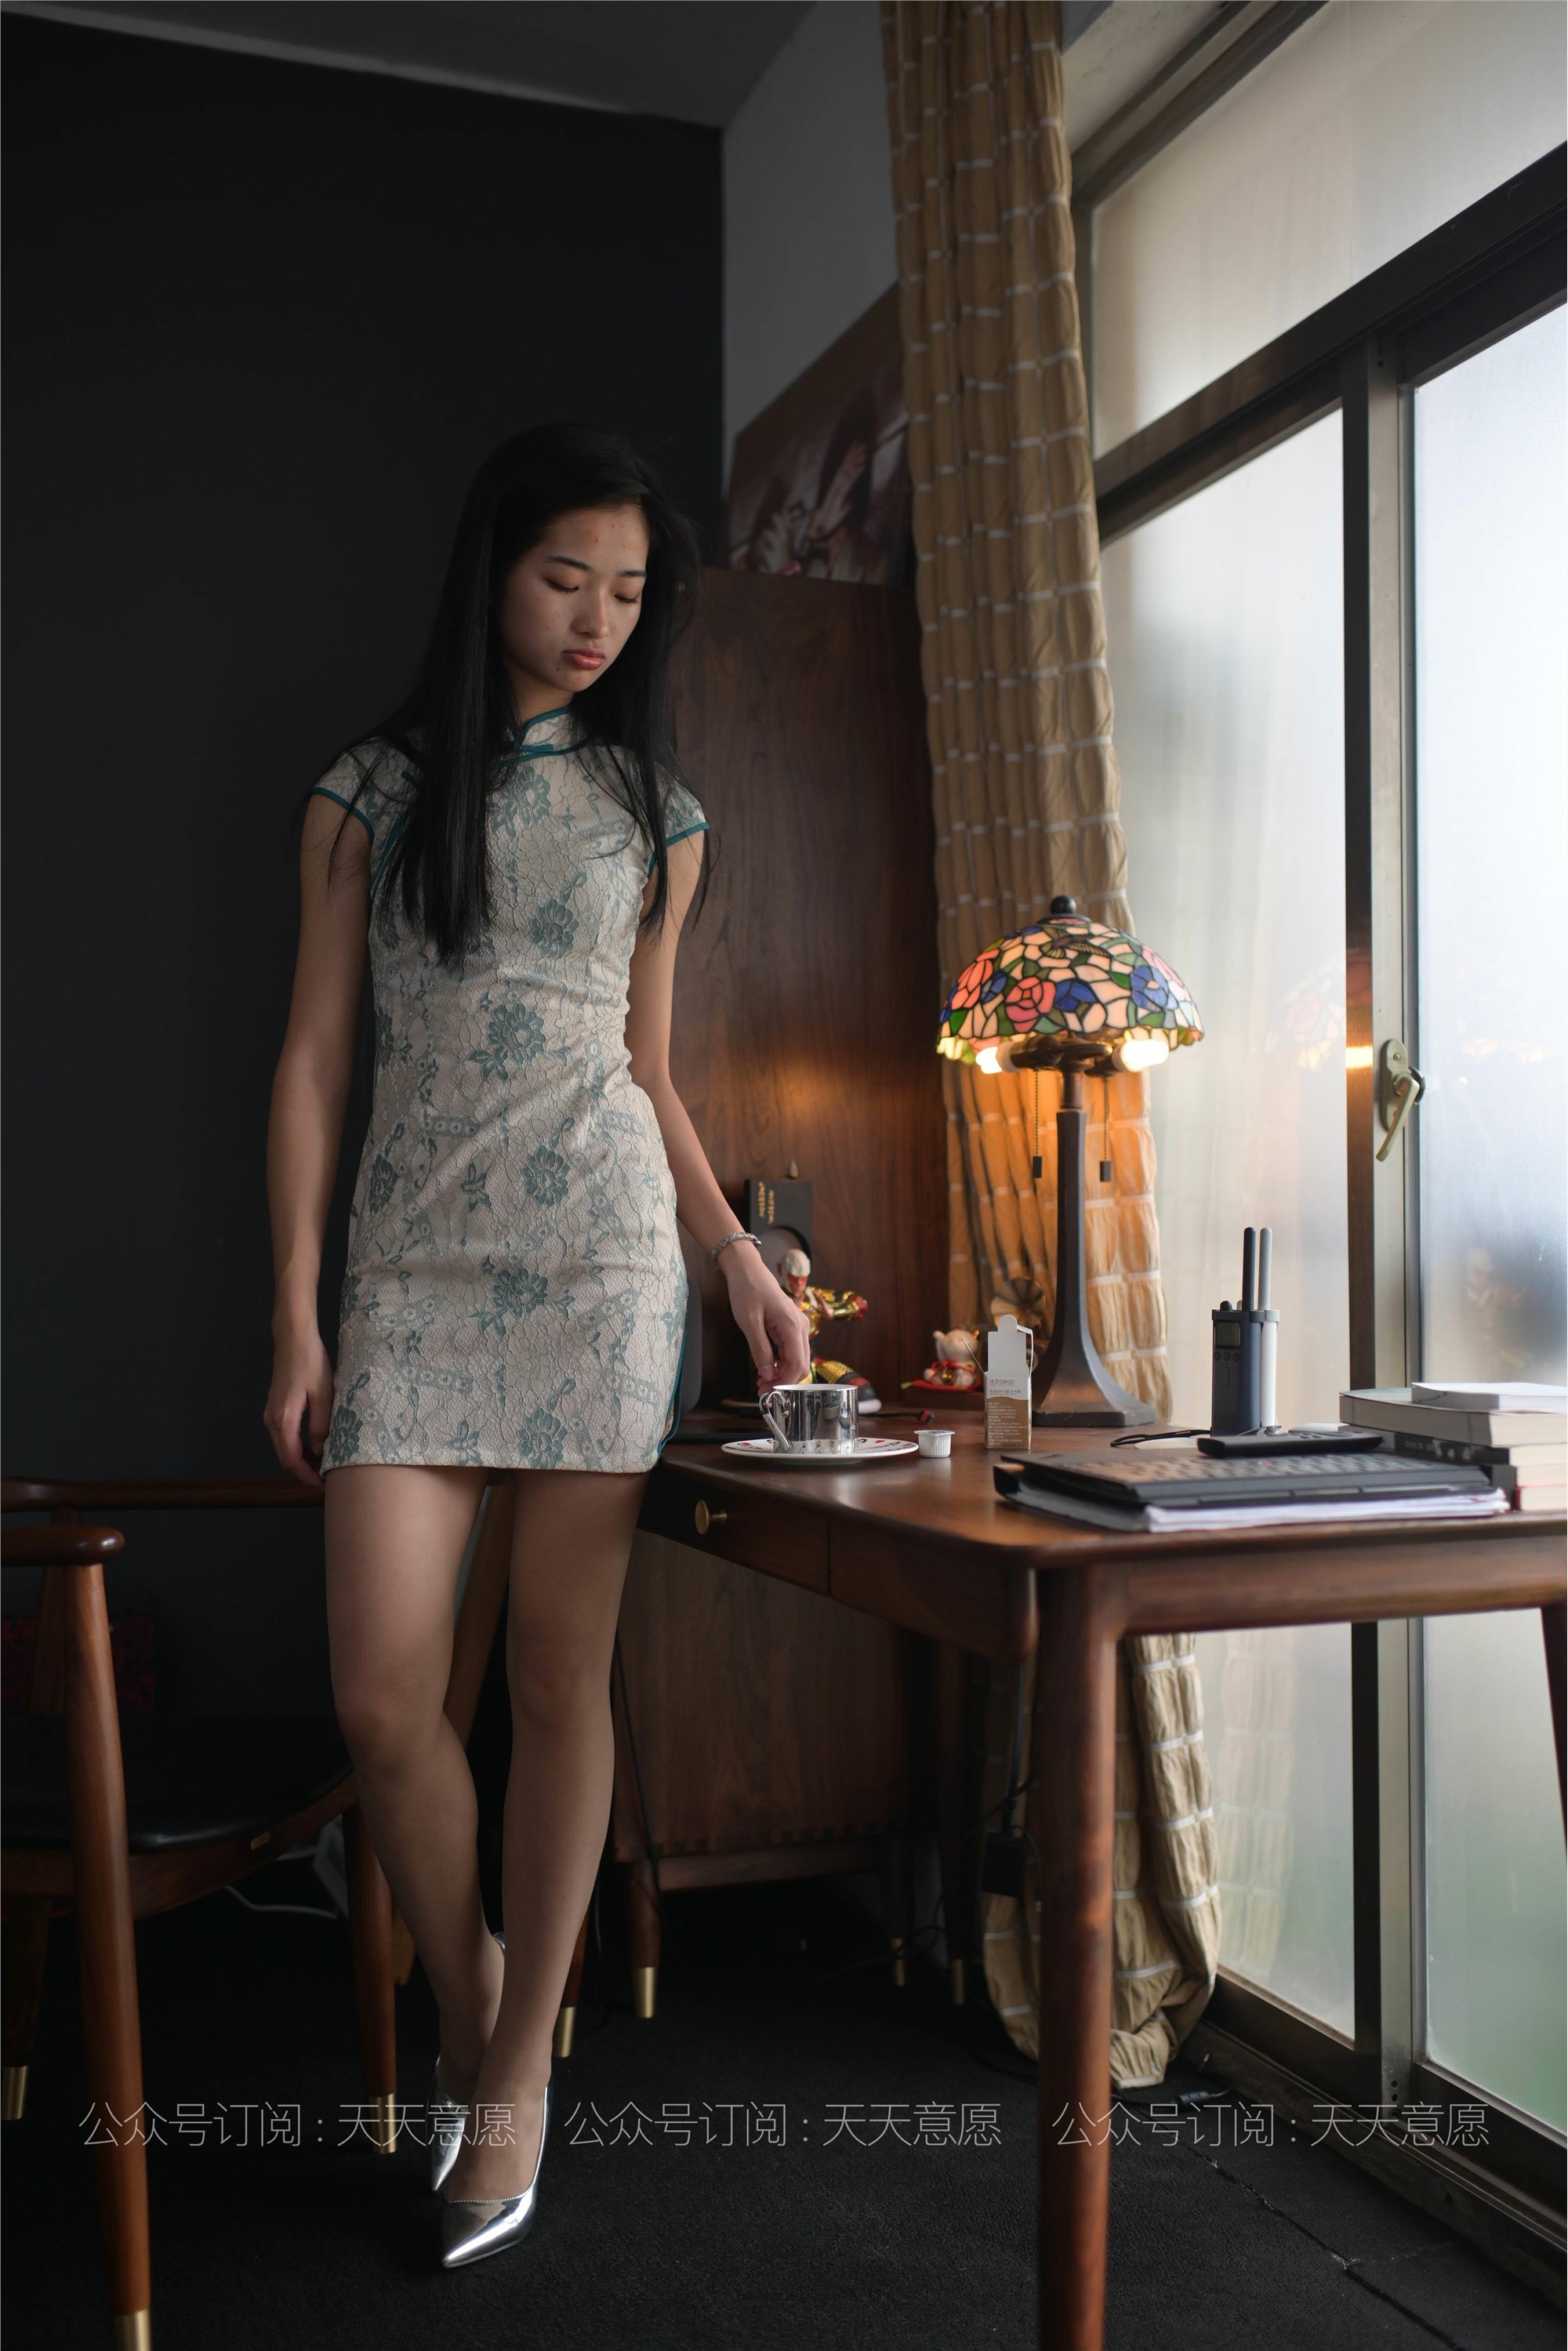 Model: Ning Ning, The Cheongsam Beauty who Loves Reading